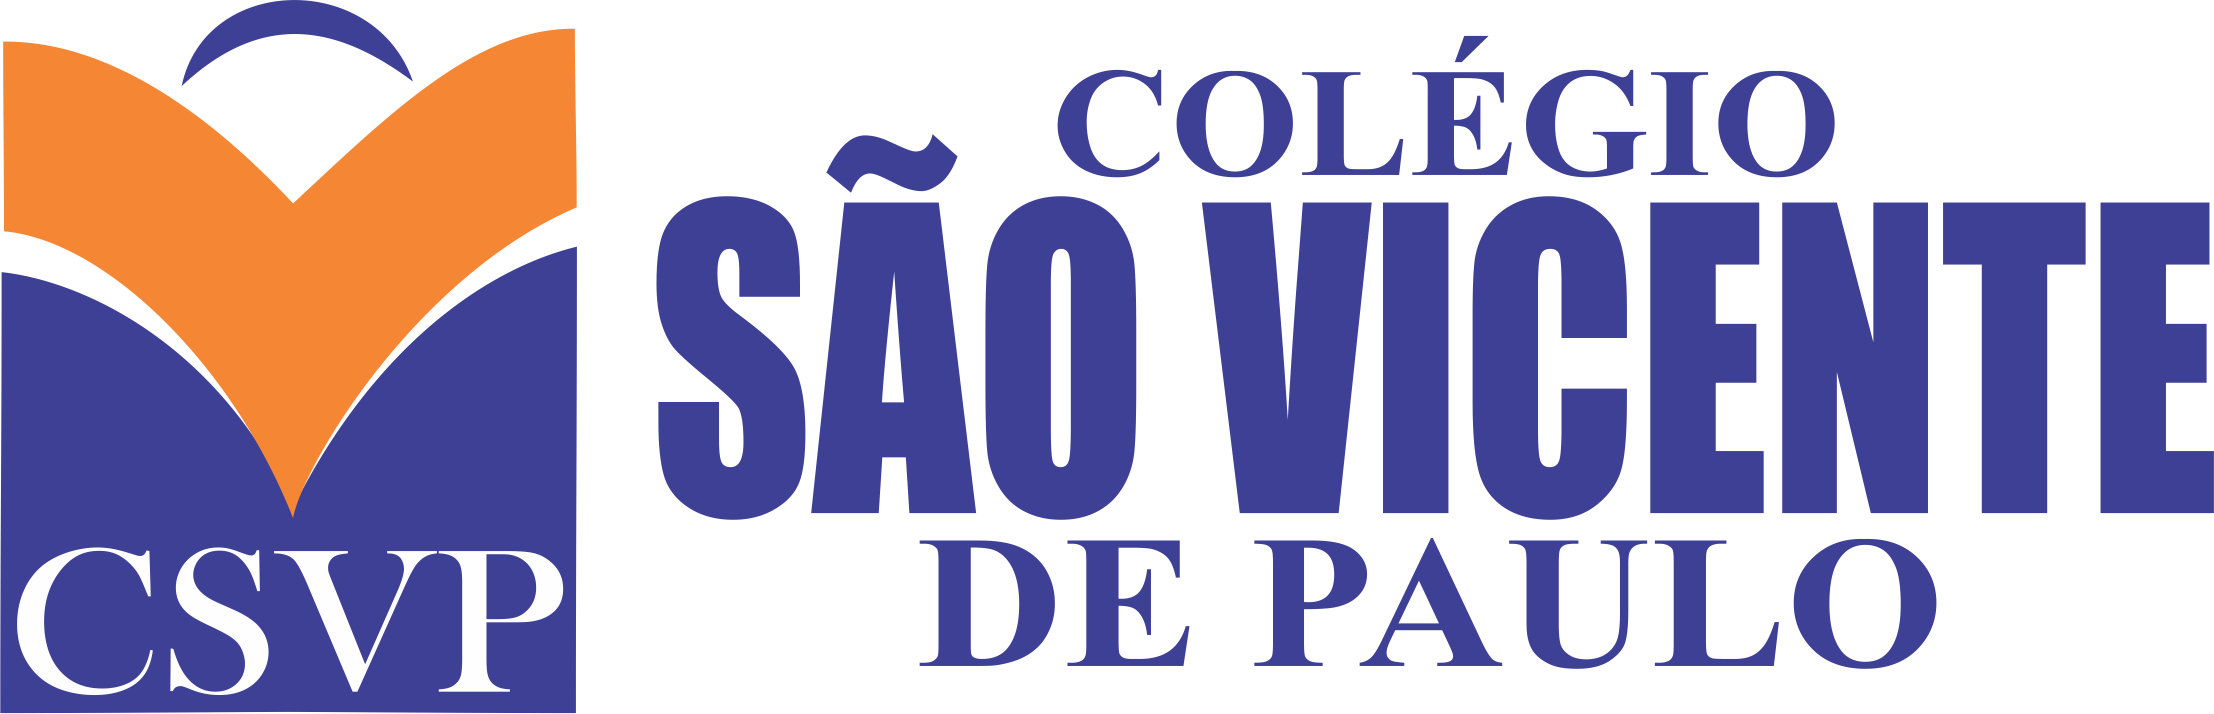 csvp.wpensar.com.br - Colégio São Vicente de Paulo - Csvp Wpensar